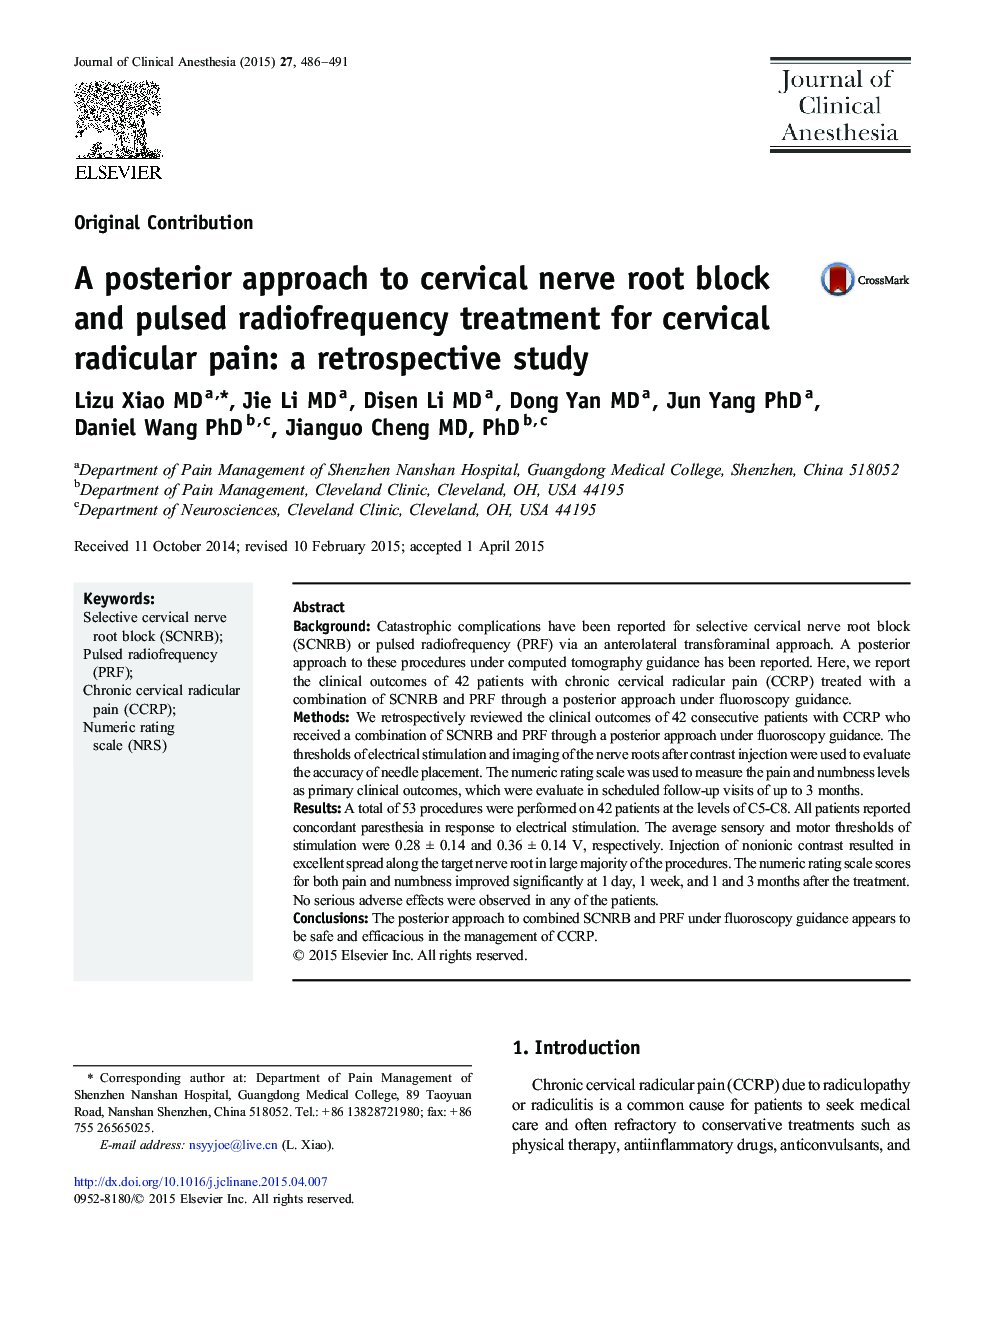 یک رویکرد خلفی به بلوک ریشه عصب دهانه رحم و درمان رادیویی فرکانس پالس برای درد ریدیکال گردنی: یک مطالعه گذشته نگر 